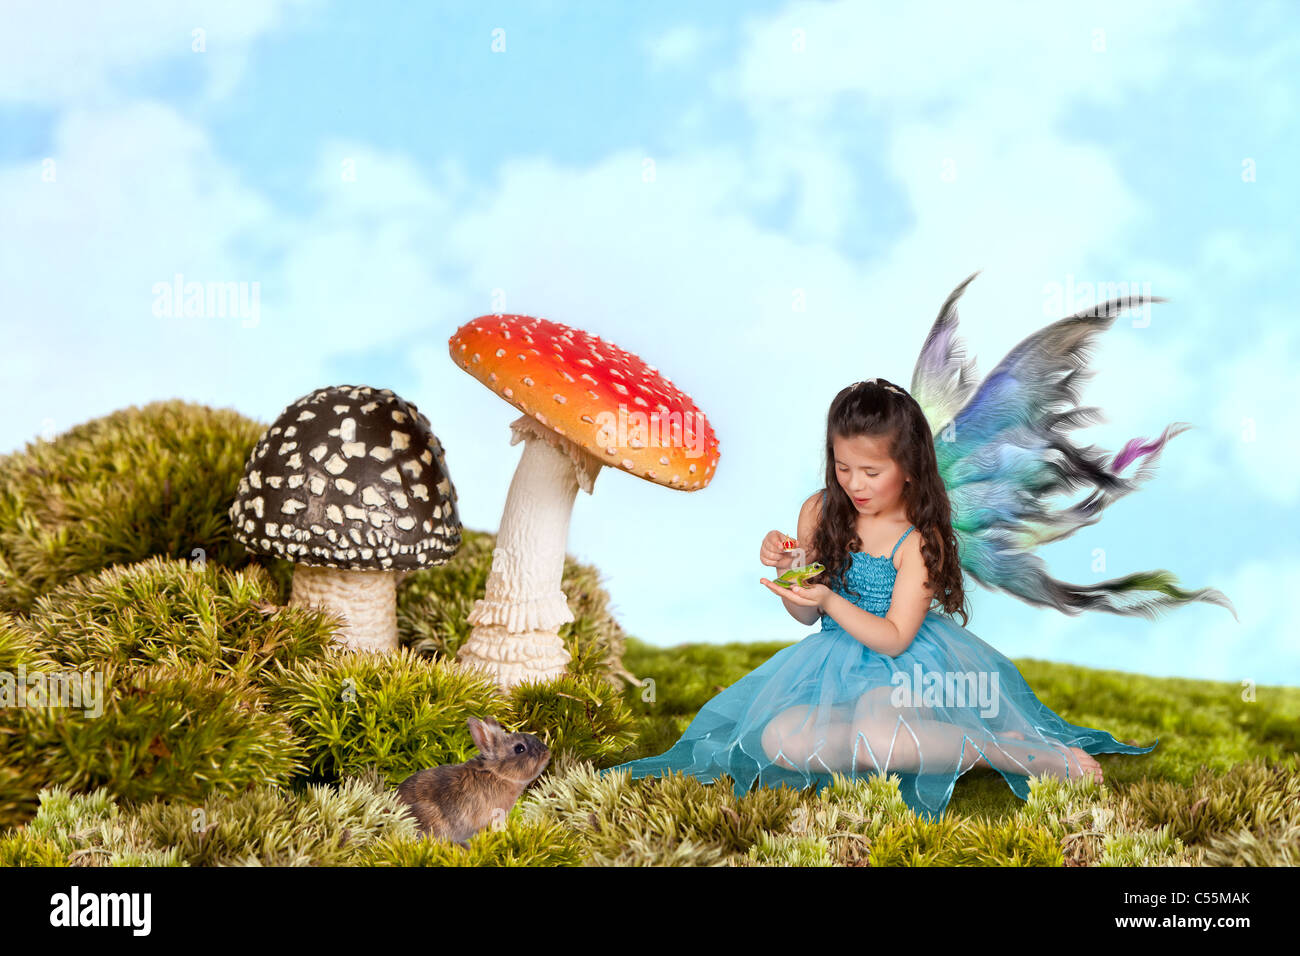 Petite fée fille avec des ailes en mettant une couronne sur une rainette Banque D'Images